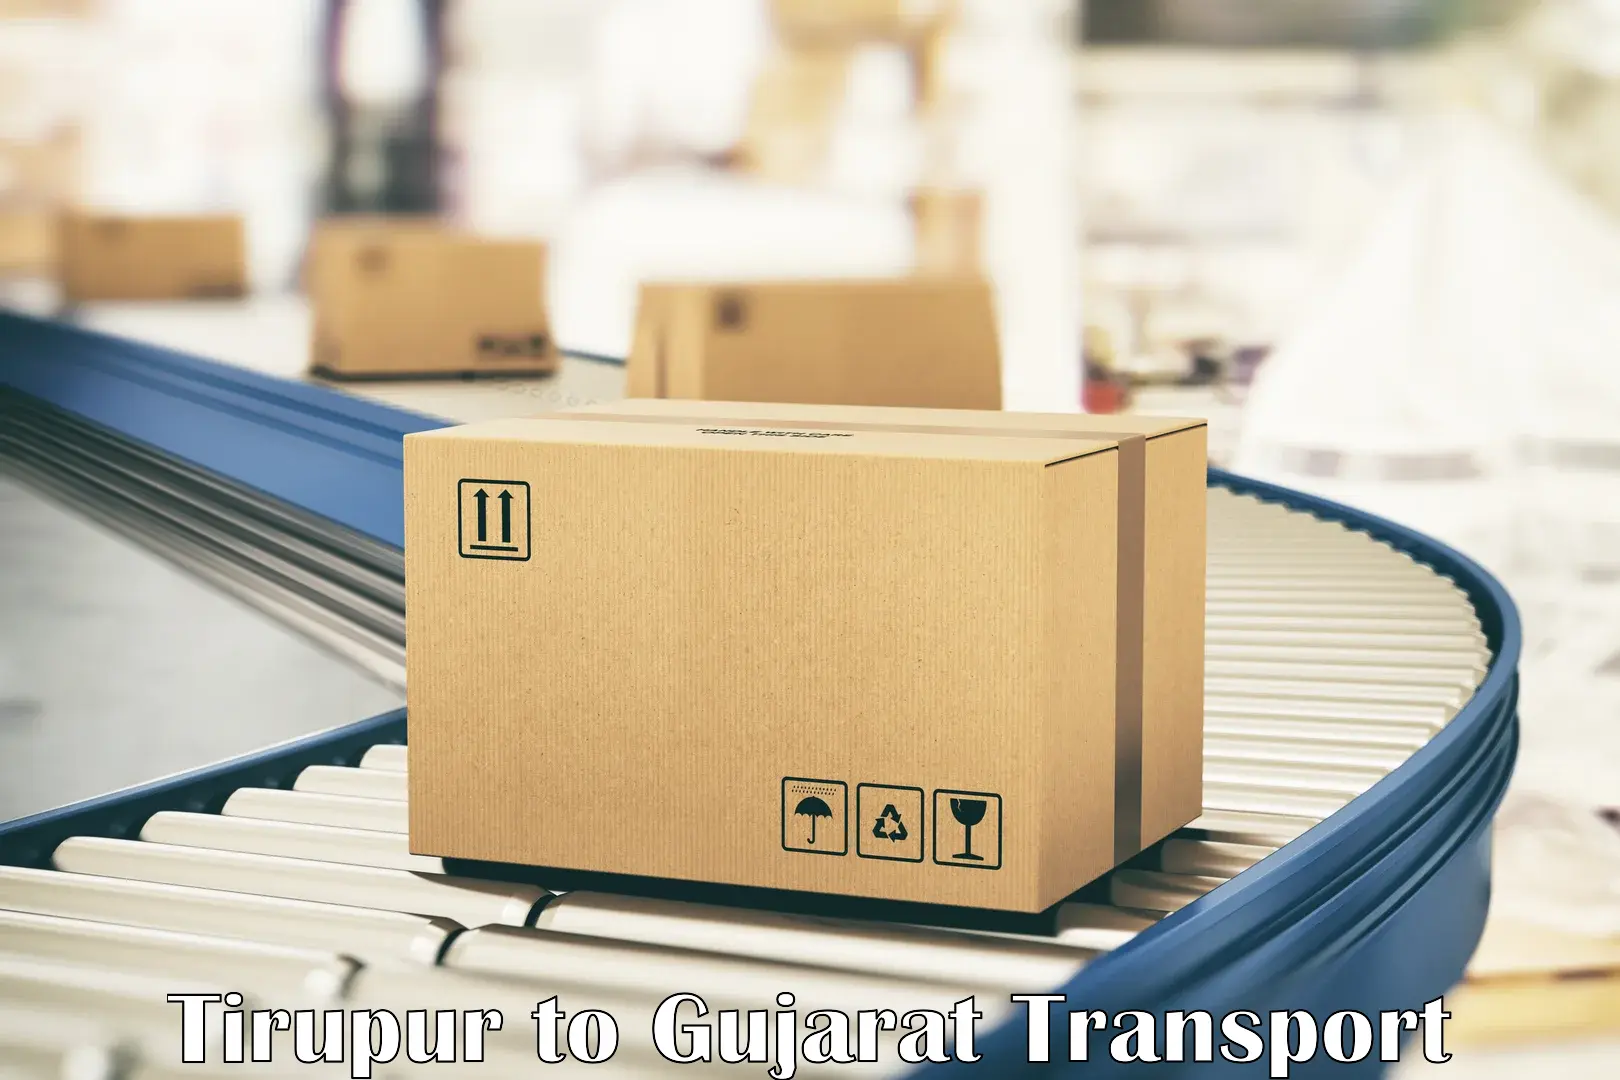 Cargo transport services Tirupur to Gandhidham